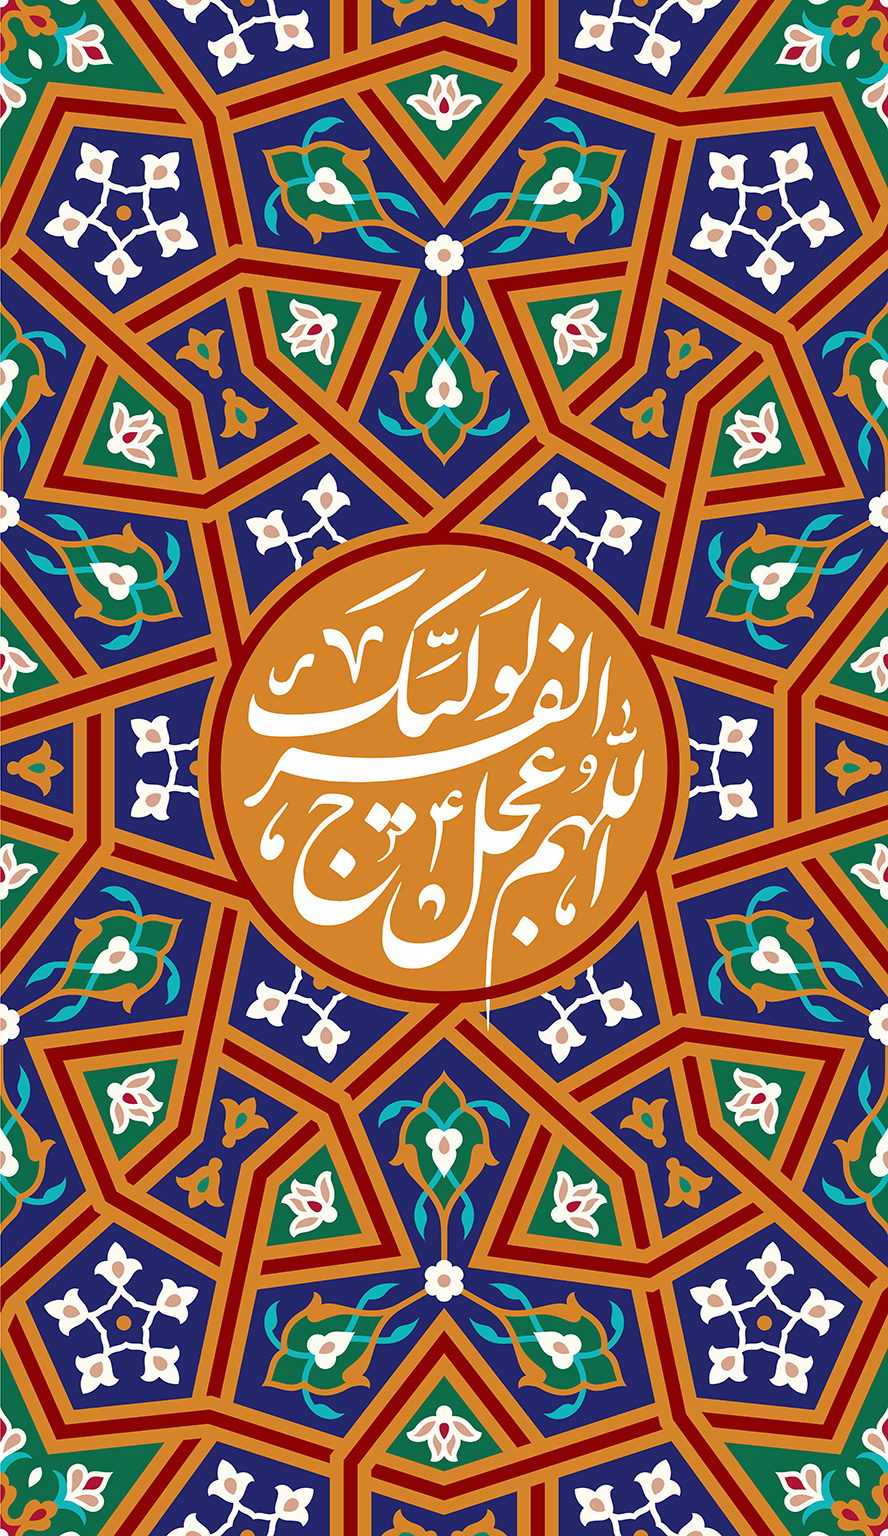 عکس با کیفیت متن اللهم عجل لولیک الفرج نوشته شده در وسط قاب با نقوش هندسی زیبا